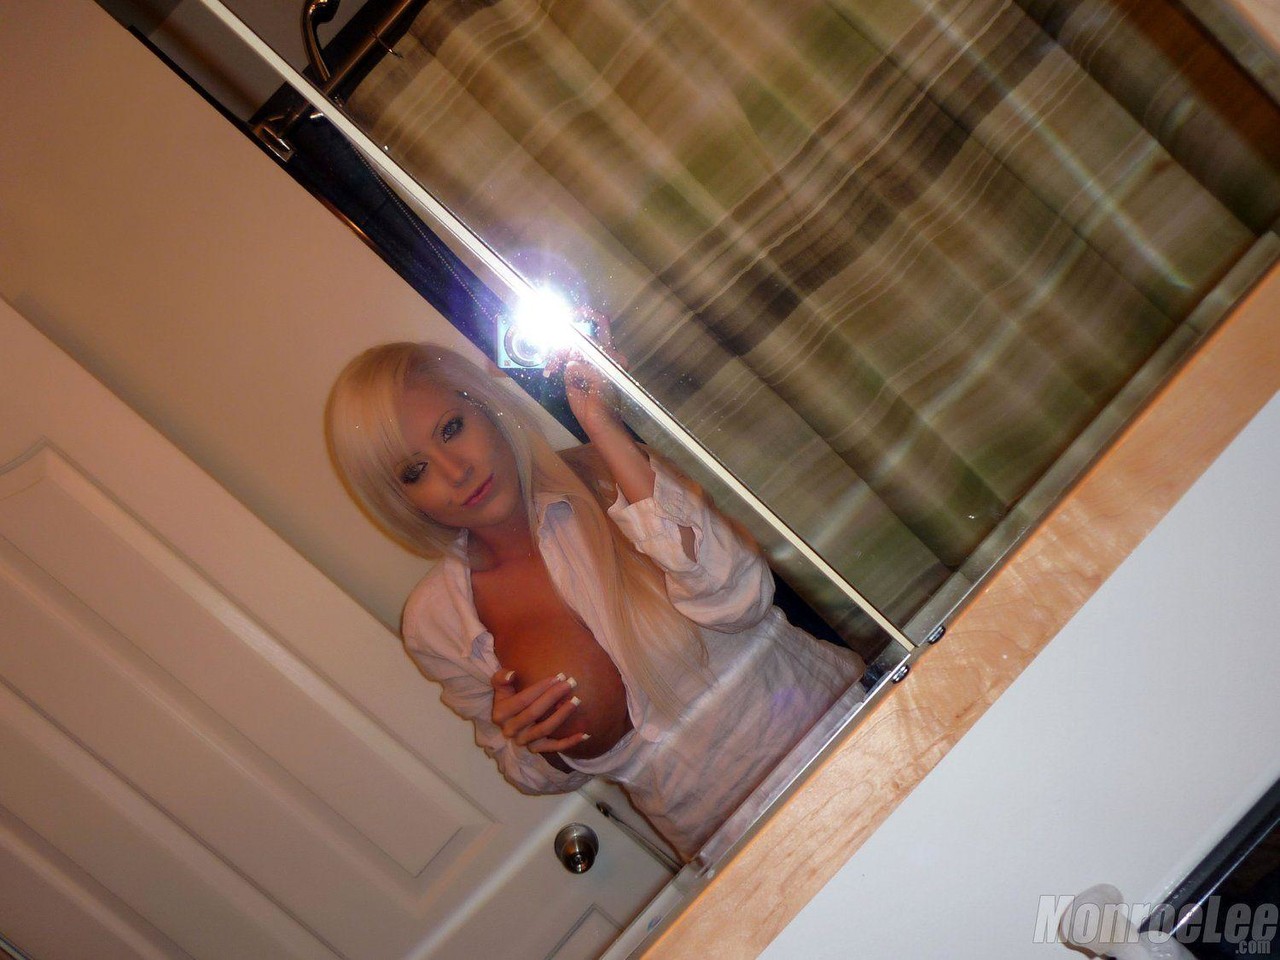 Monroe Lee Bathroom Selfies porn photo #425648148